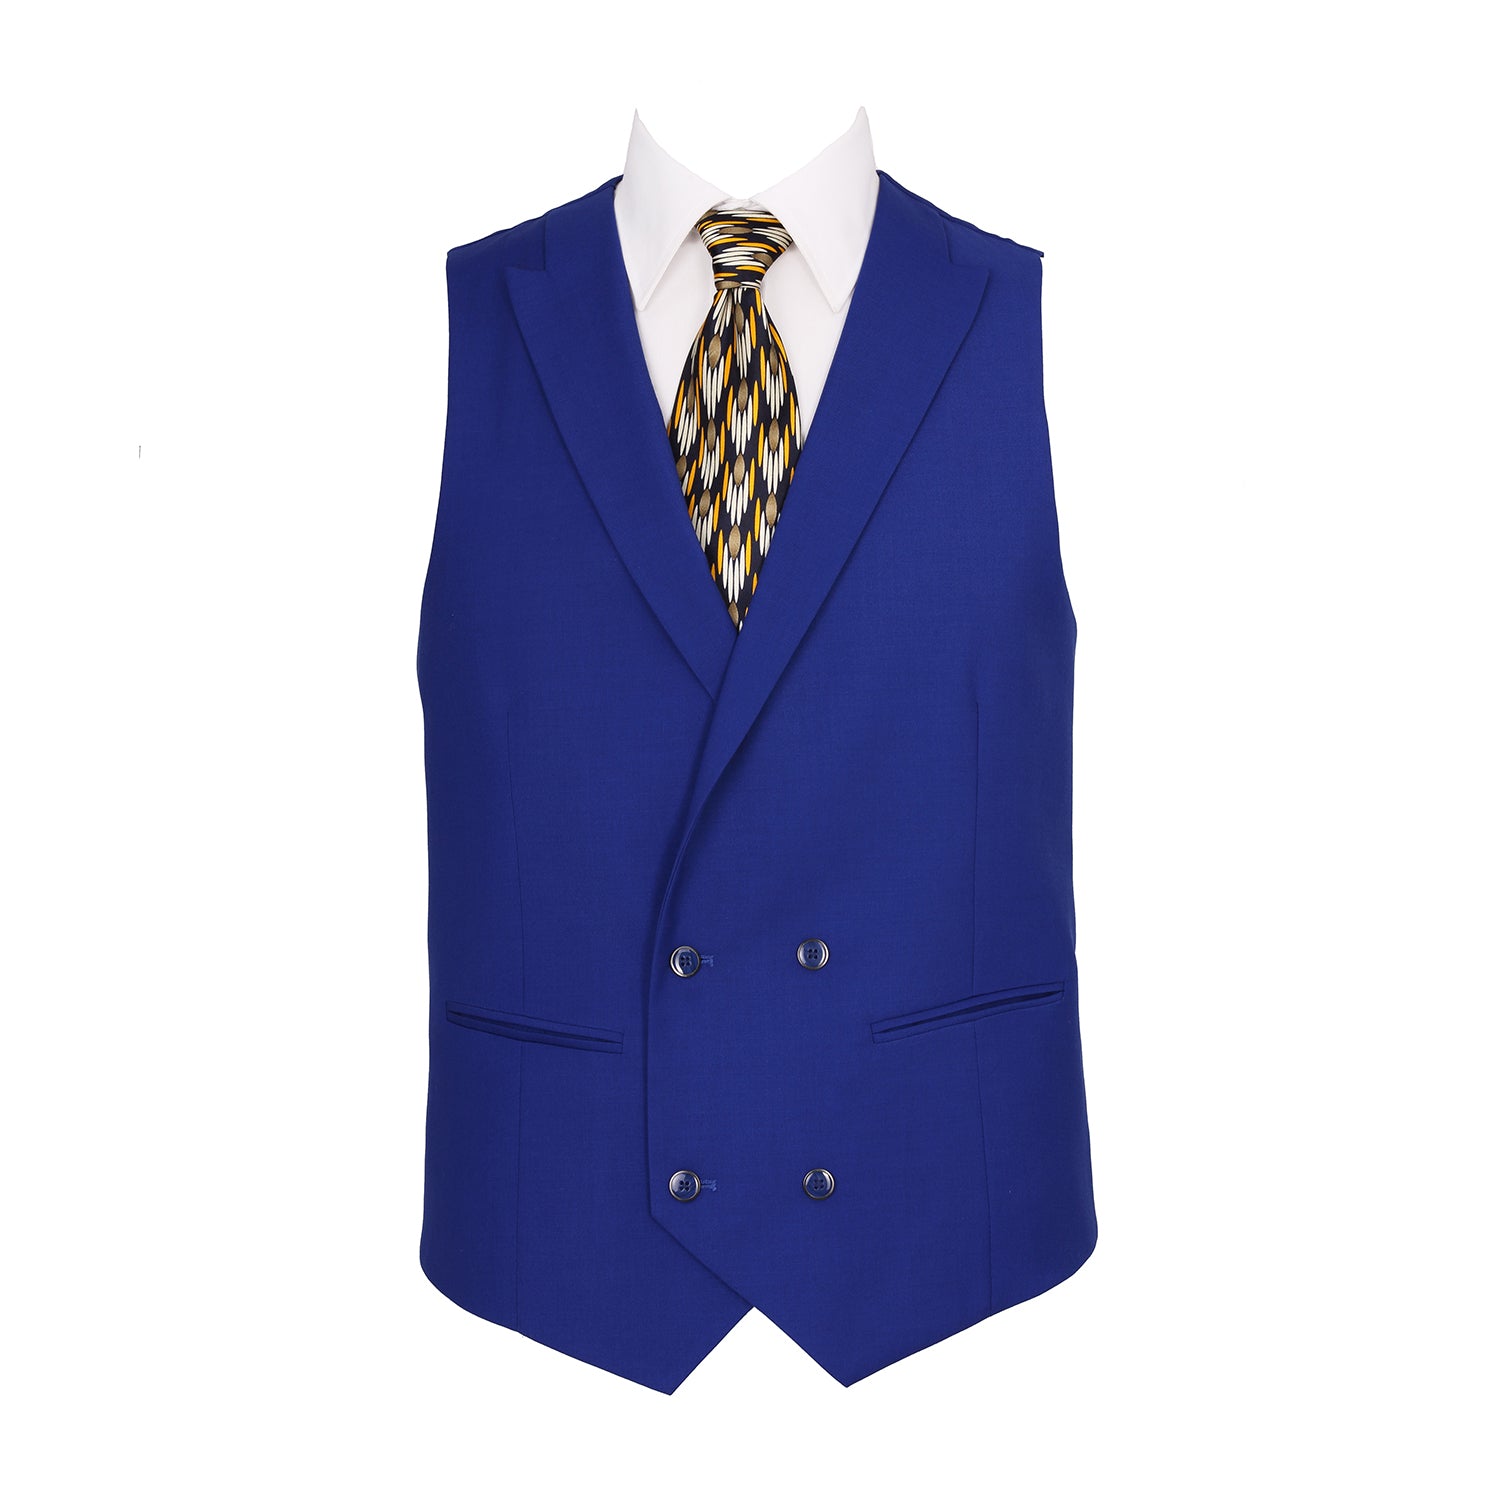 Men's 3-Piece Classic Fit Suit Set Solid Jacket Vest Pant Office Dress Suit